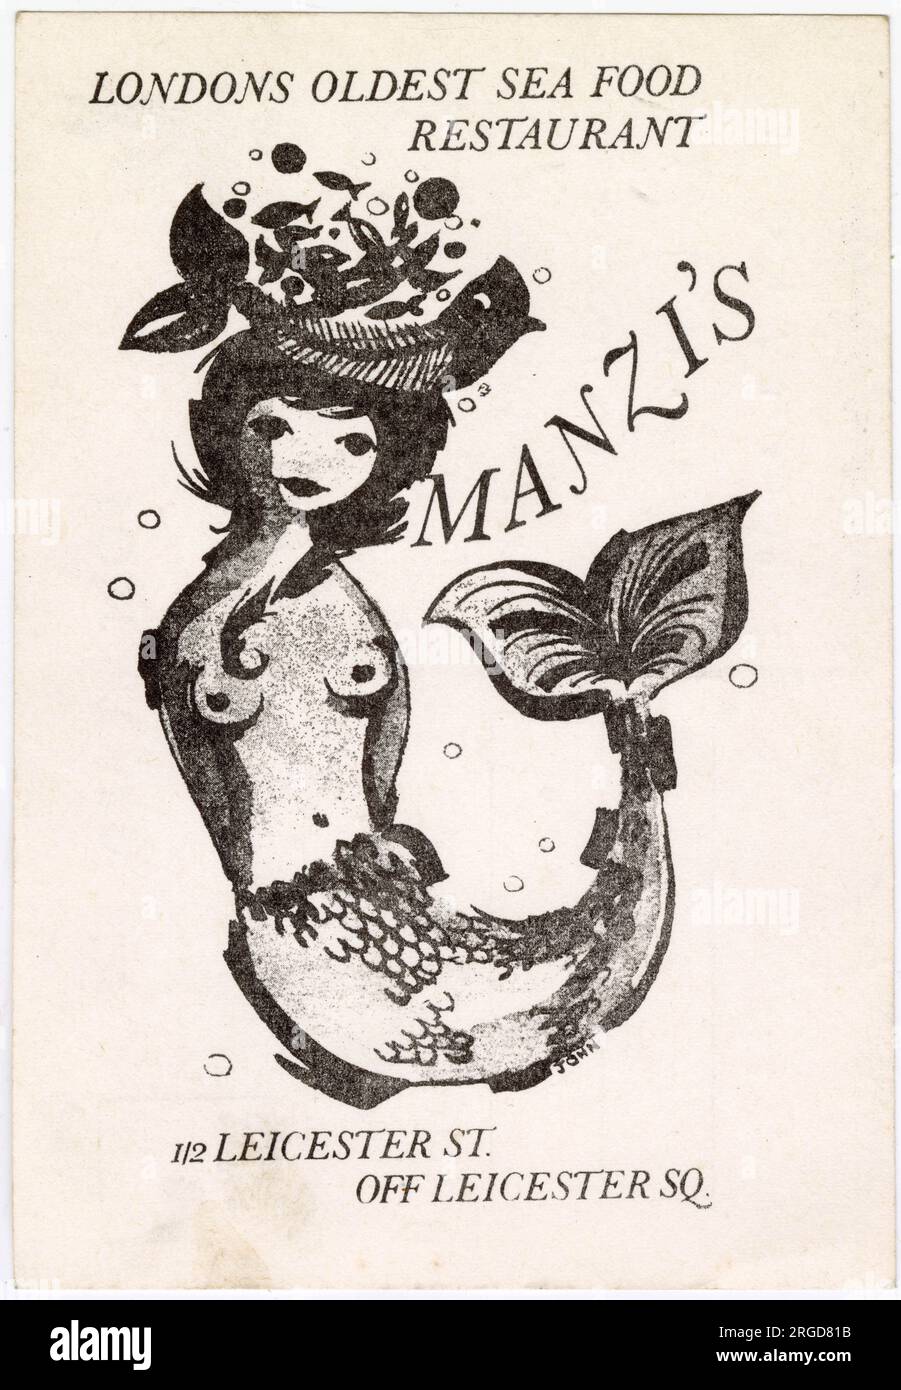 Cartolina promozionale per il ristorante di pesce Manzi's a Leicester Square, che andava dagli anni '1950 agli anni '2000 Una reincarnazione di Manzi è stata ora aperta dal gruppo Wolseley nel luglio 2023. Foto Stock